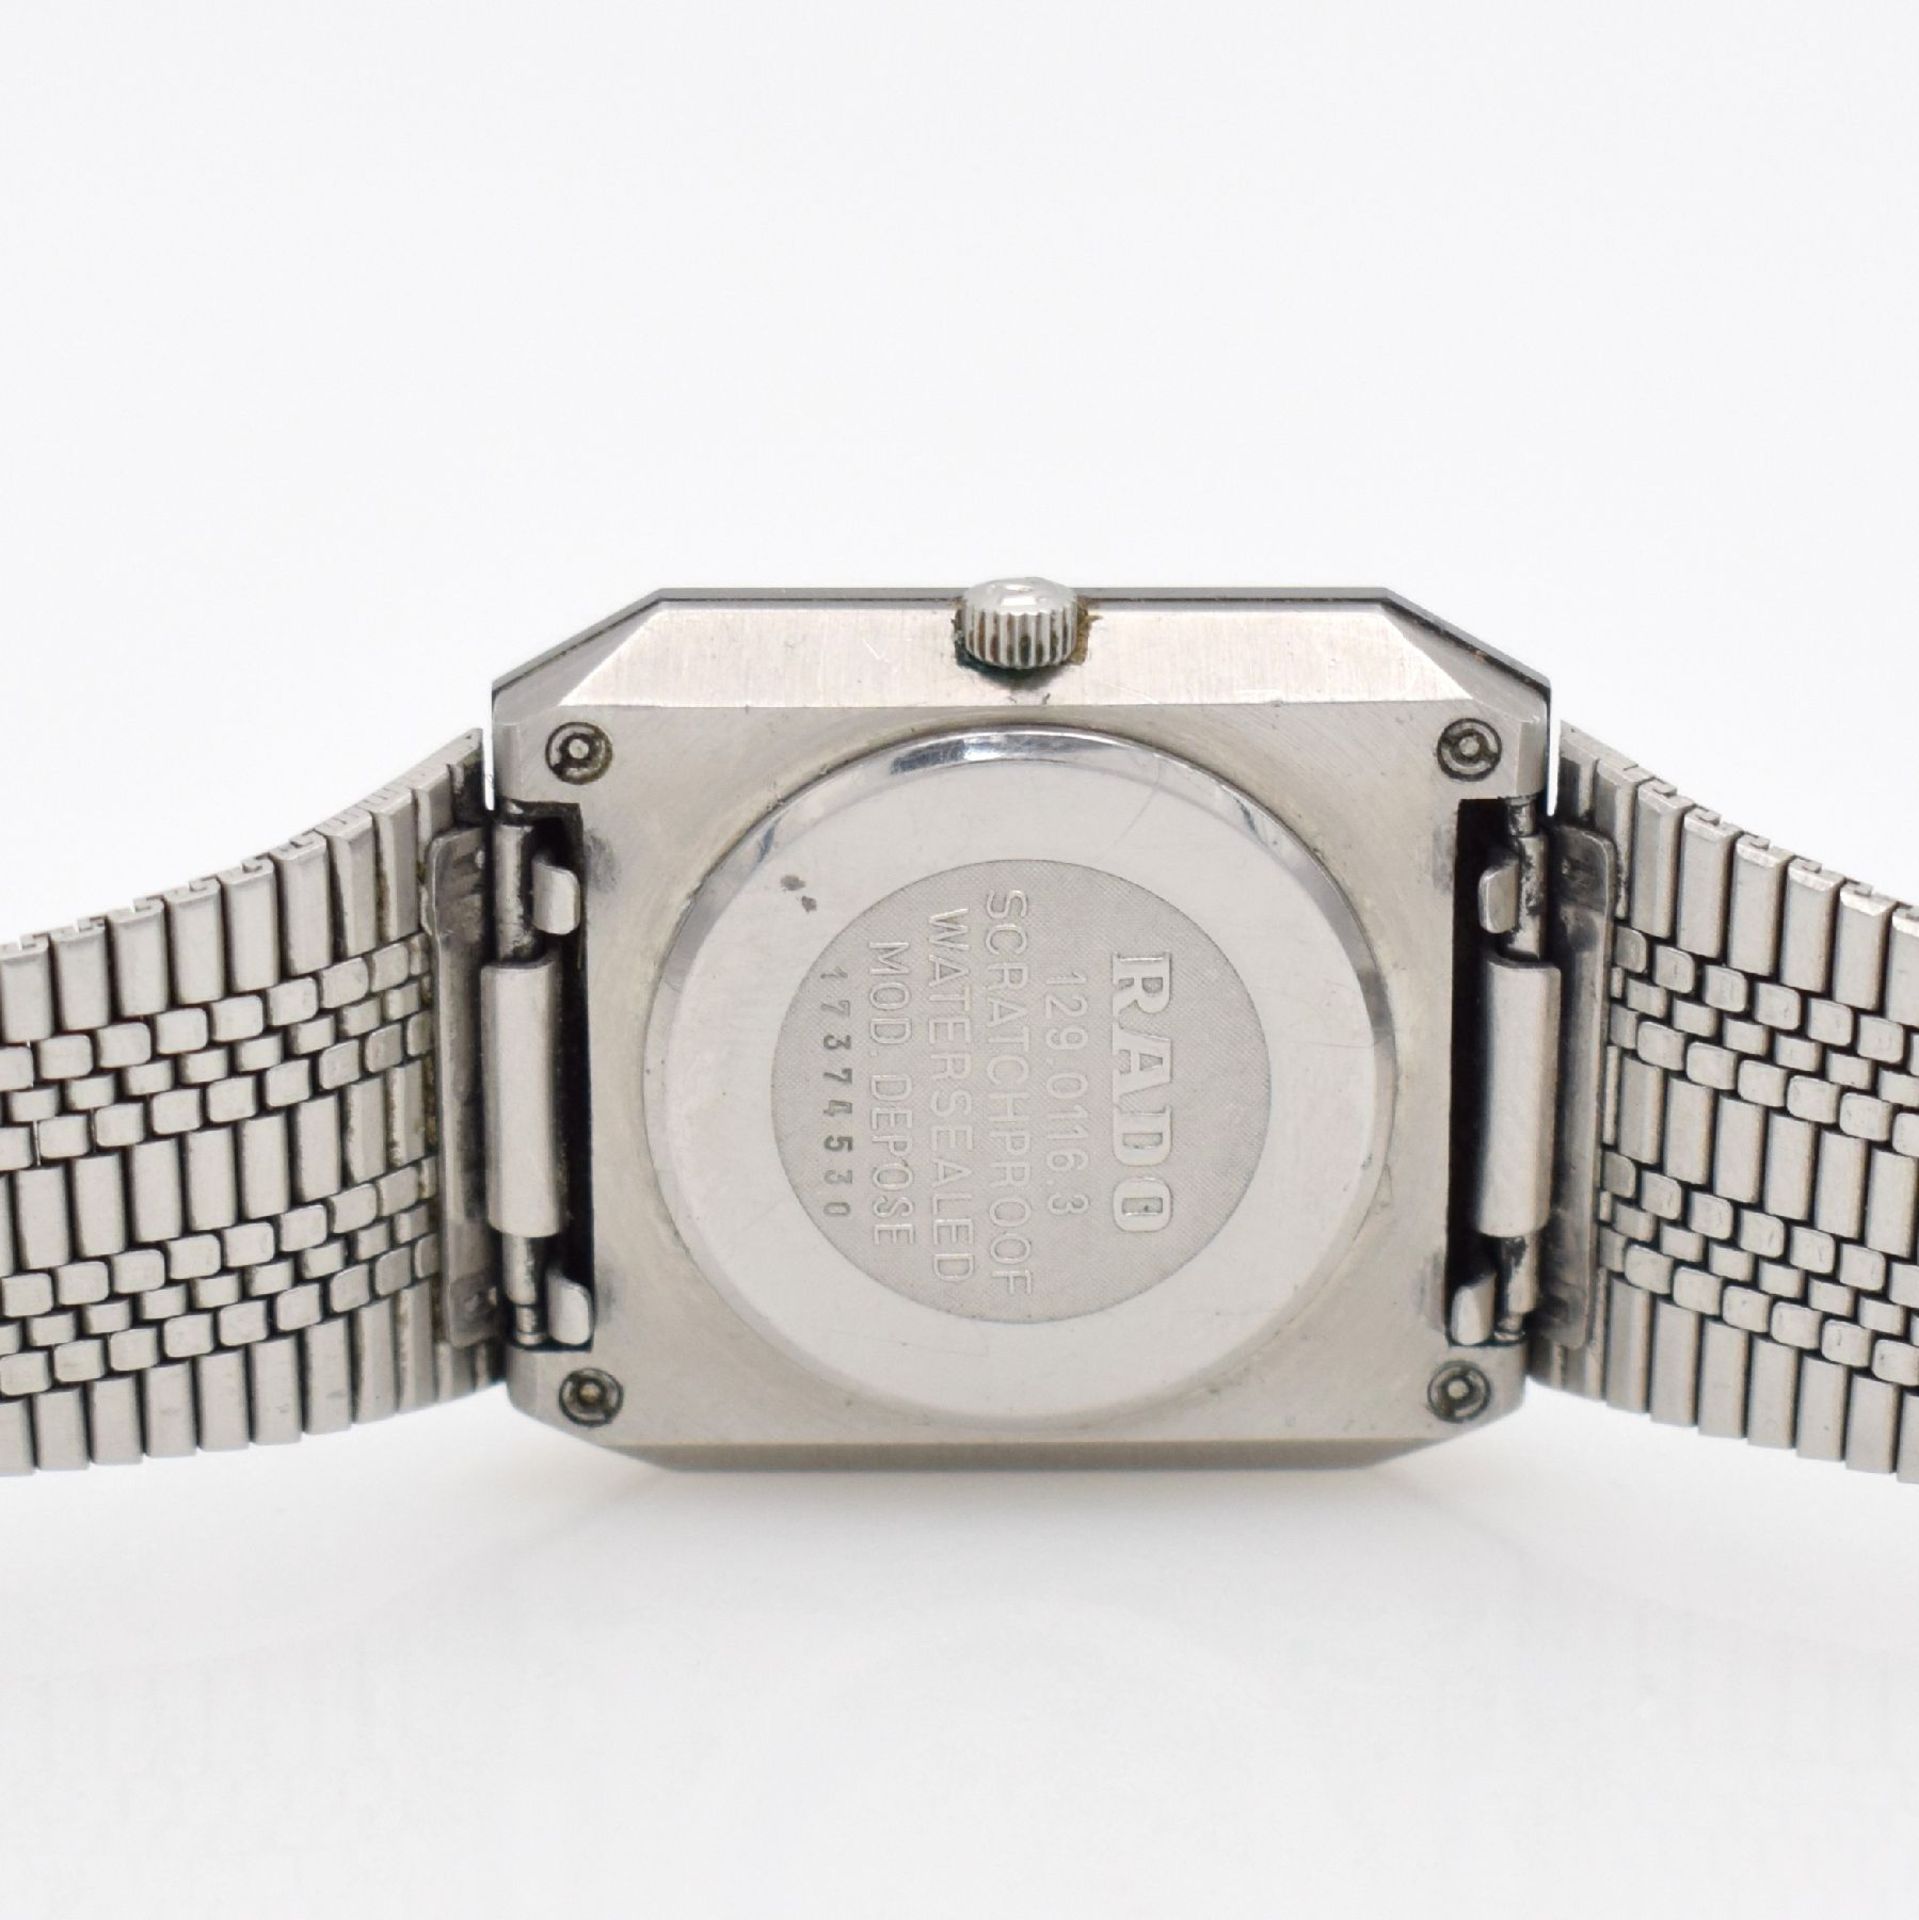 RADO Diastar Armbanduhr in Stahl/Stahlband, Schweiz um 1980, quarz, gedr. Stahlgeh. m. kratz- - Bild 7 aus 7